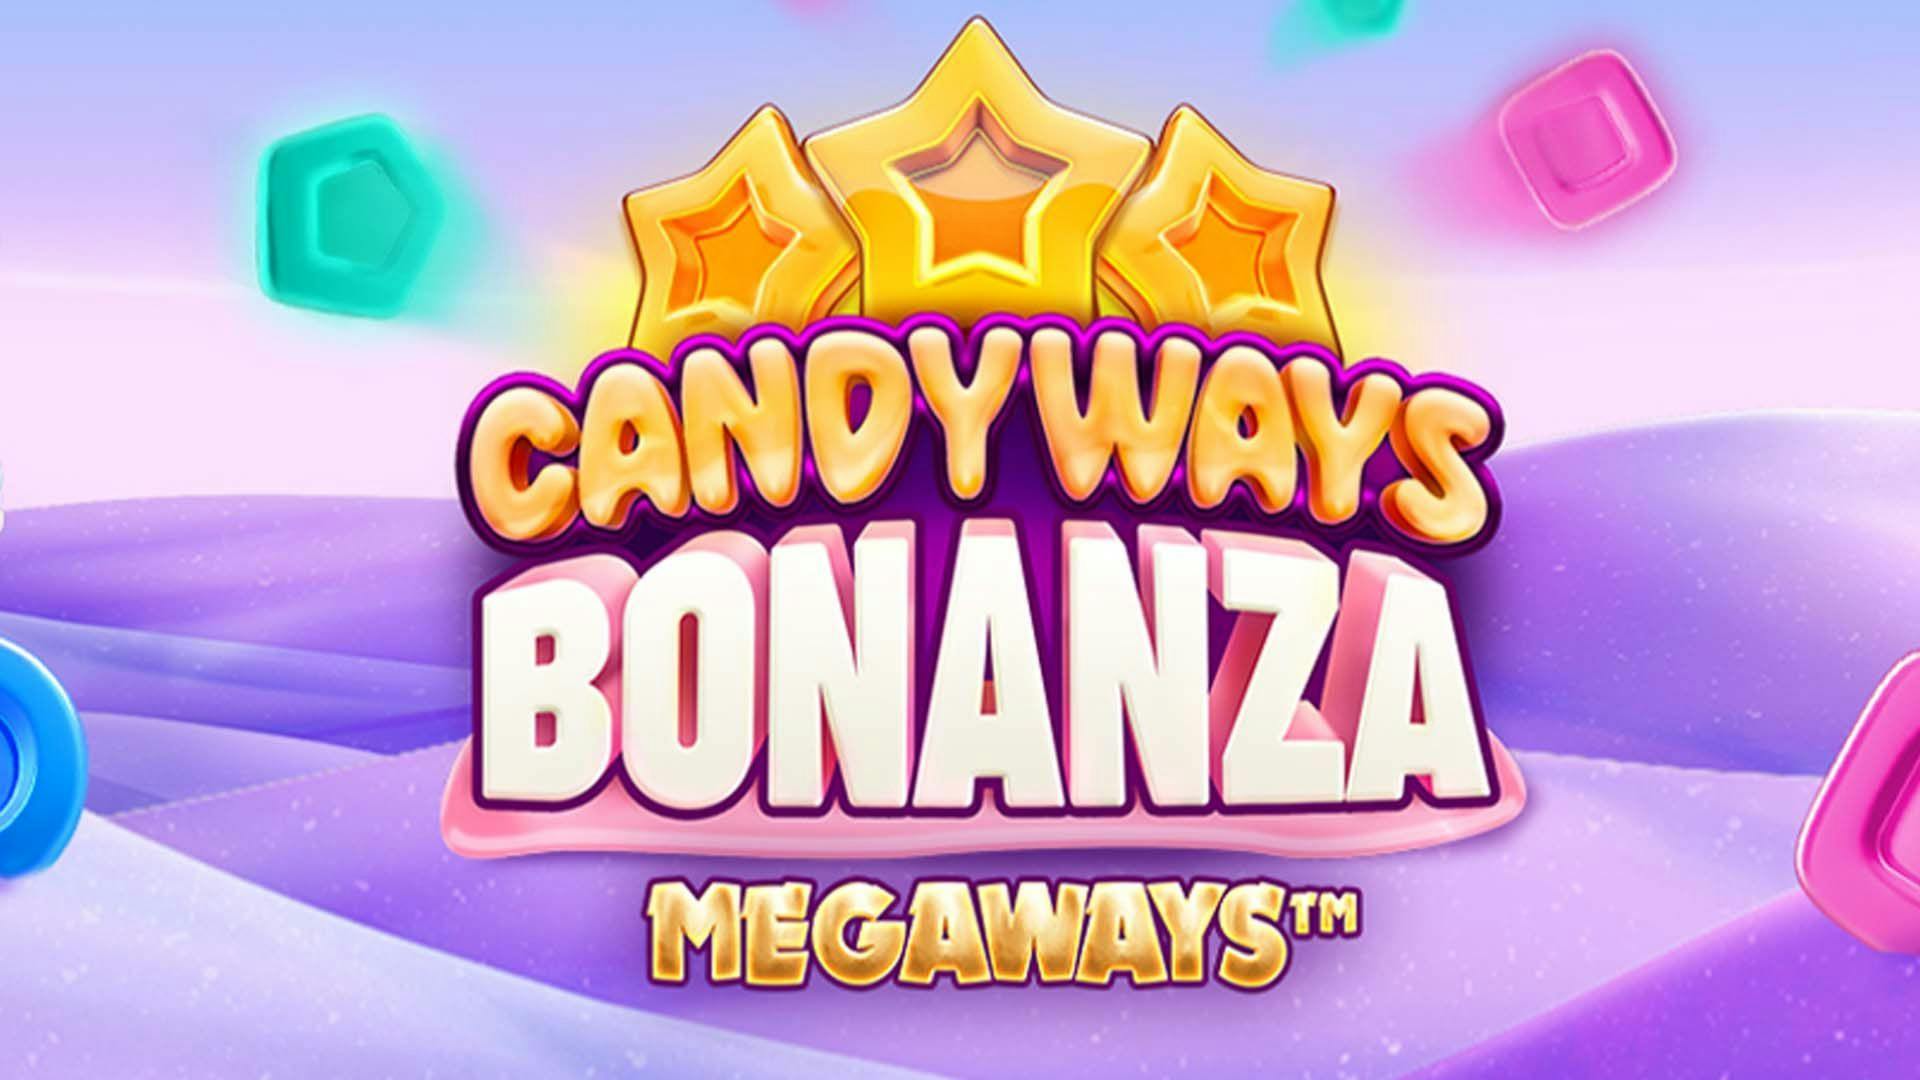 Candyways Bonanza Megaways Slot Machine Online Free Demo